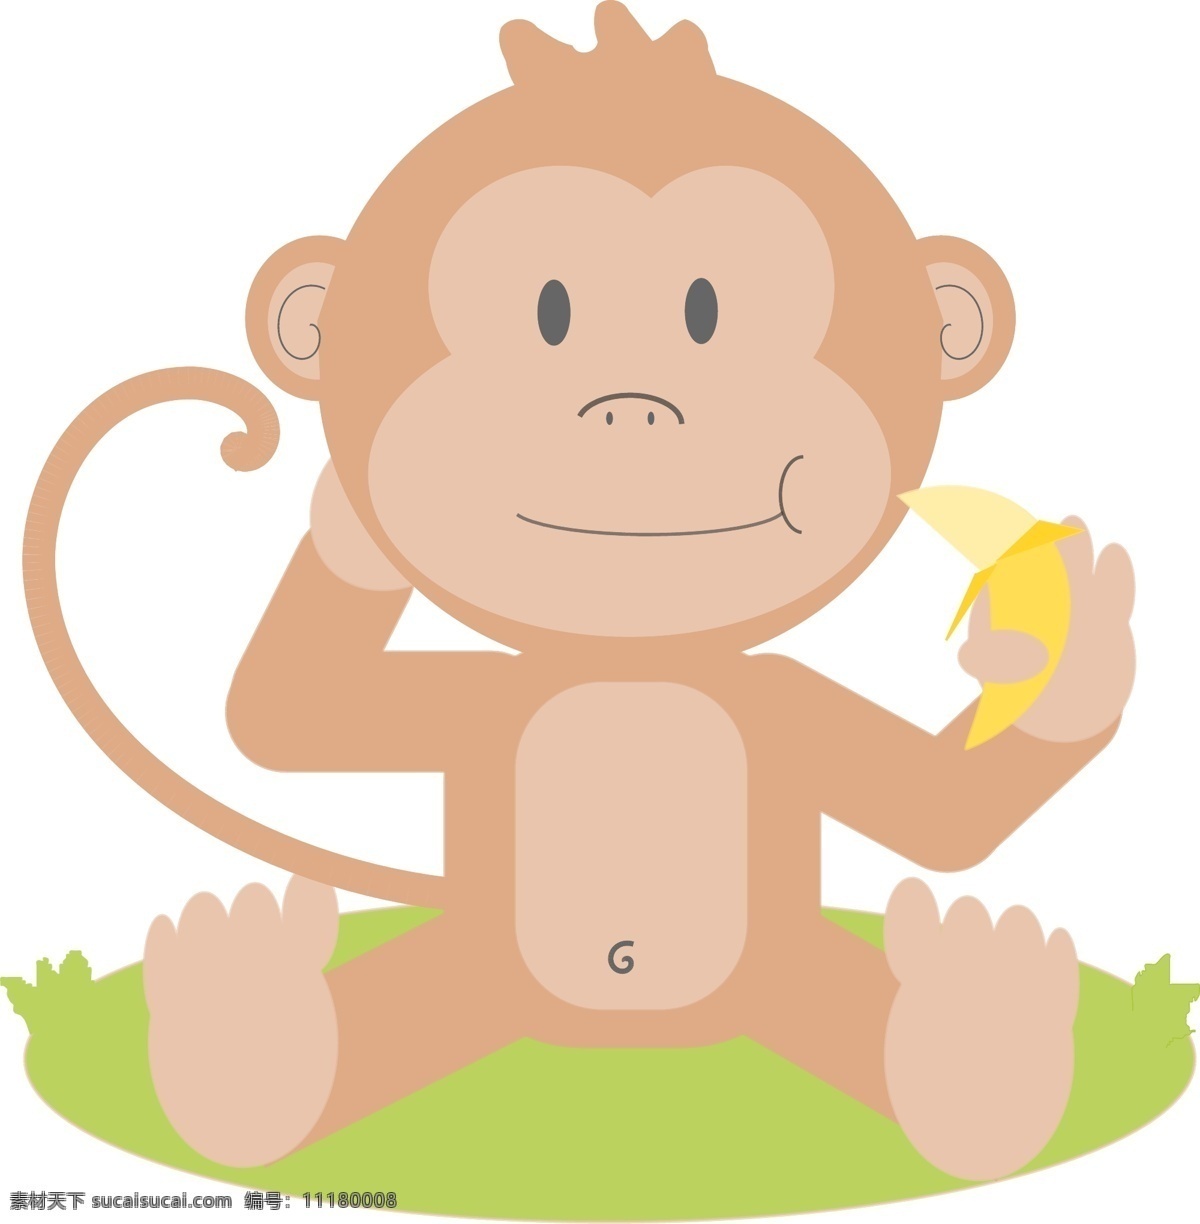 可爱卡通 卡通动物 卡通猴子 猴子矢量图 猴子素材 猴子吃香蕉 动物矢量 生物世界 野生动物